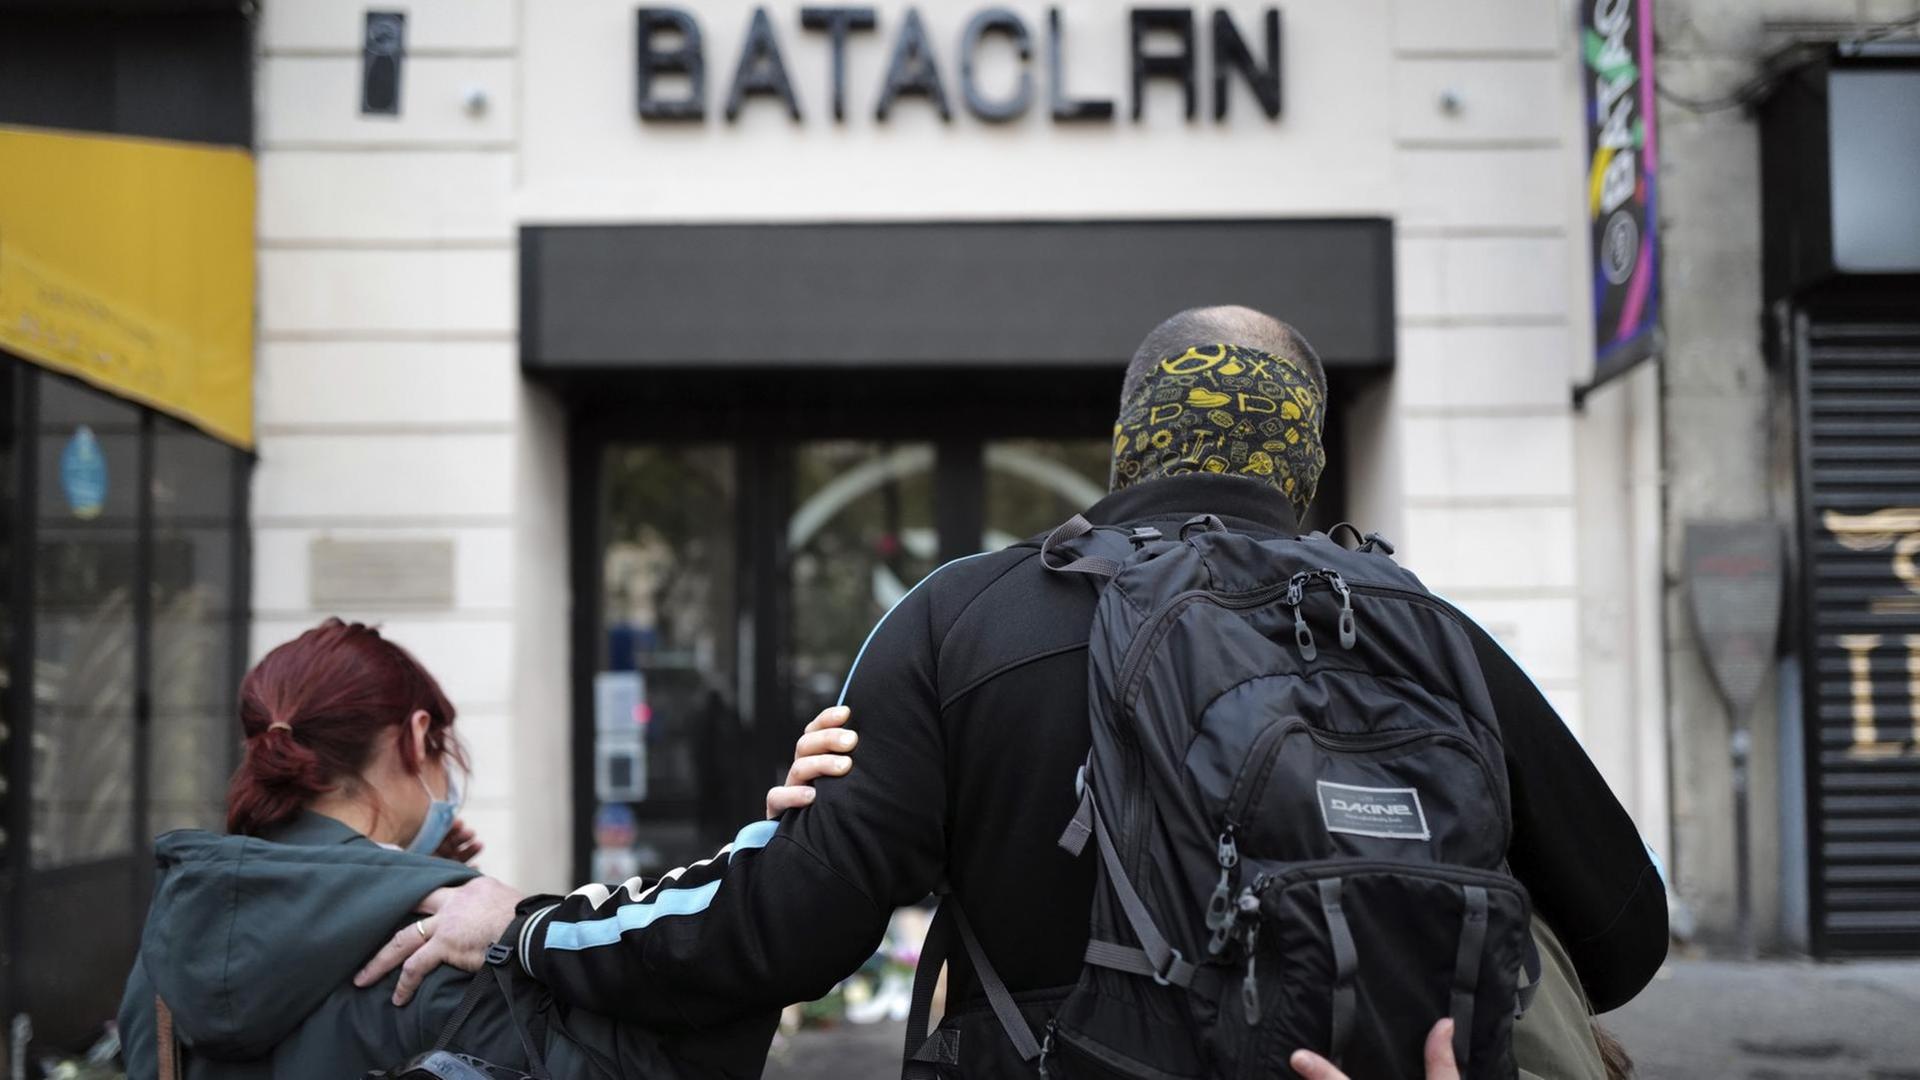 Gedenken an die Opfer des Bataclan-Anschlags (AP Photo/Francois Mori)